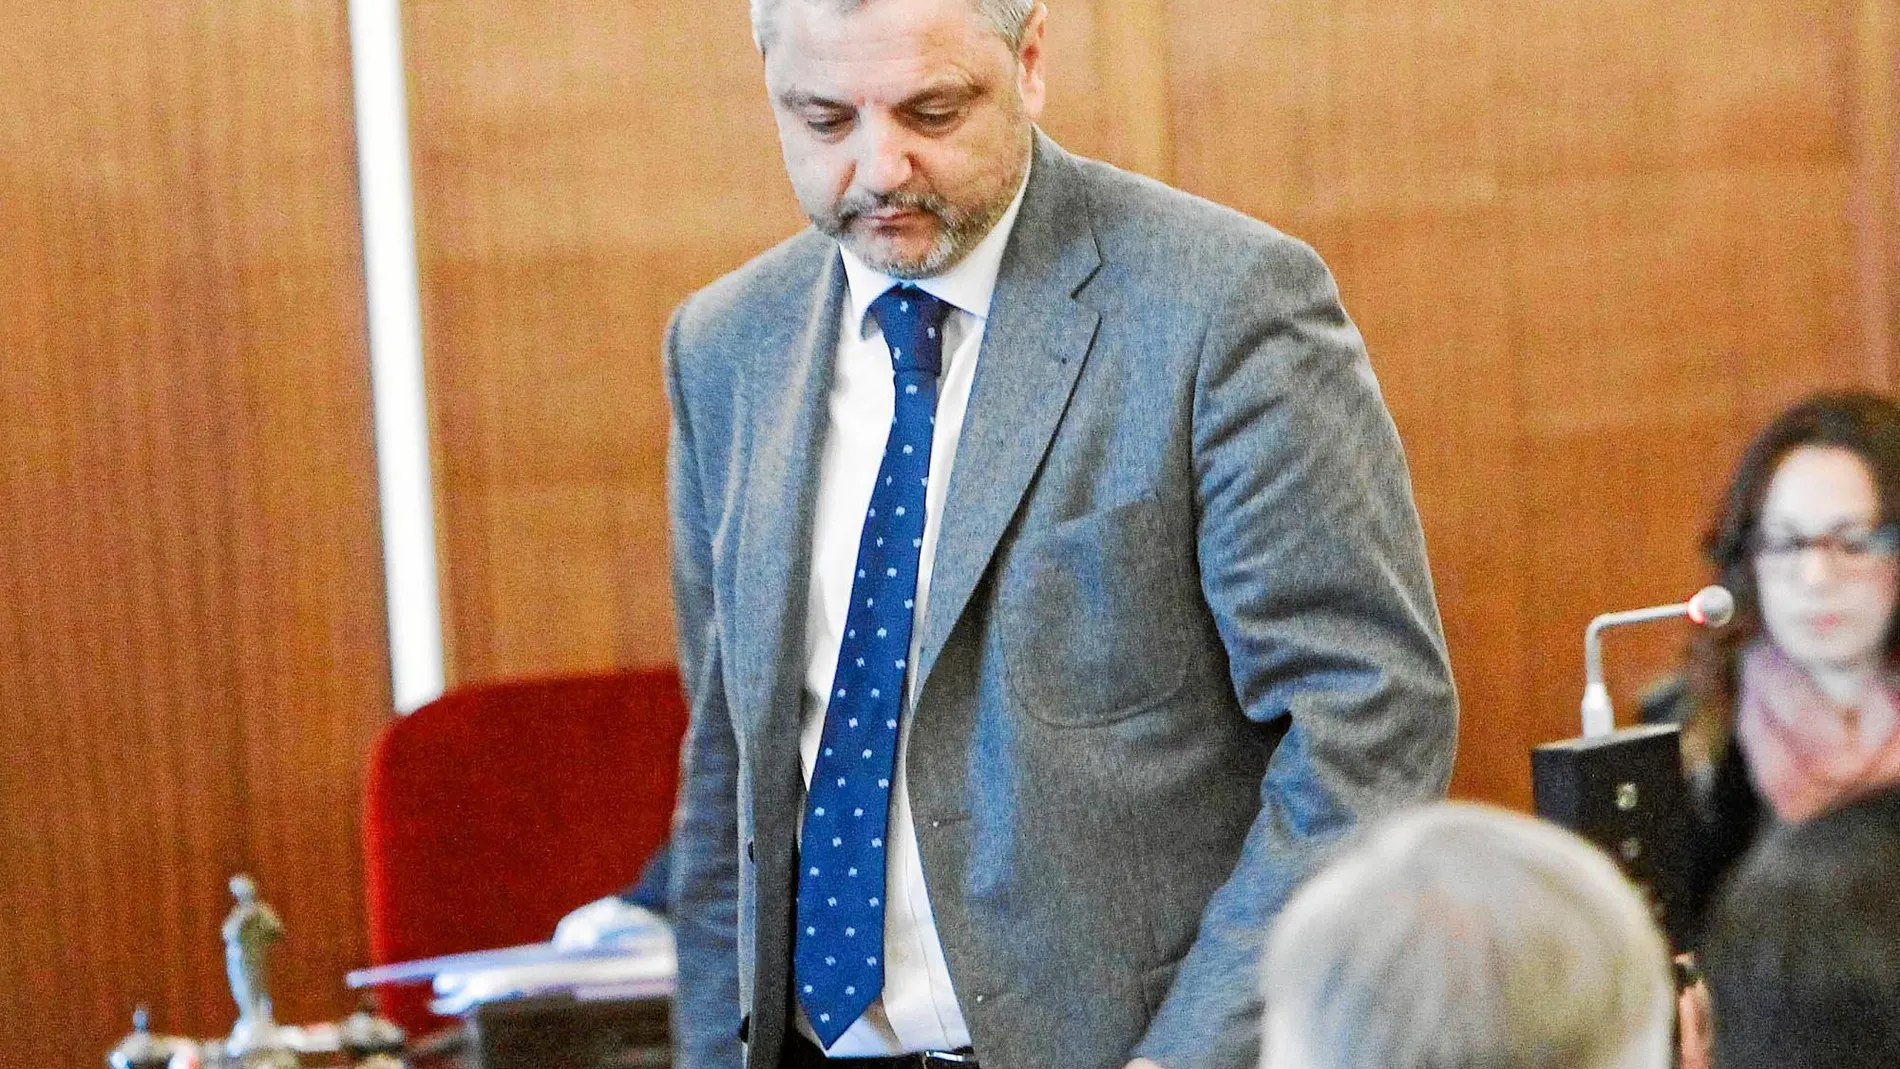 El ex director de Mercasevilla, Fernando Mellet, ha sido juzgado durante un mes por prevaricación y malversación junto a otros 13 acusados en la Audiencia de Sevilla